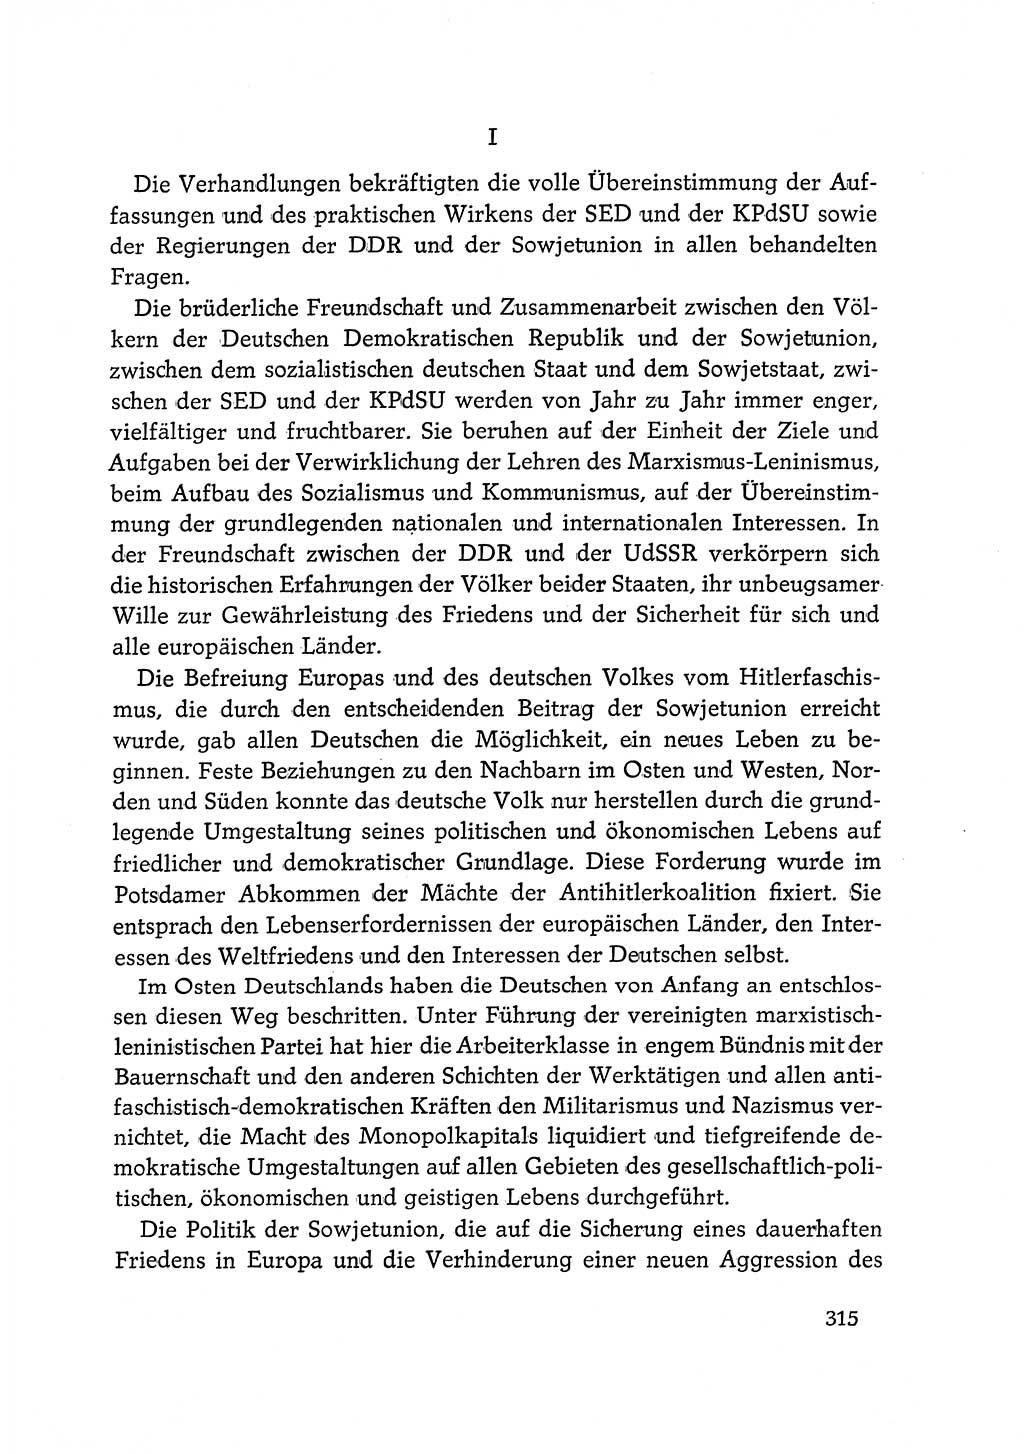 Dokumente der Sozialistischen Einheitspartei Deutschlands (SED) [Deutsche Demokratische Republik (DDR)] 1968-1969, Seite 315 (Dok. SED DDR 1968-1969, S. 315)